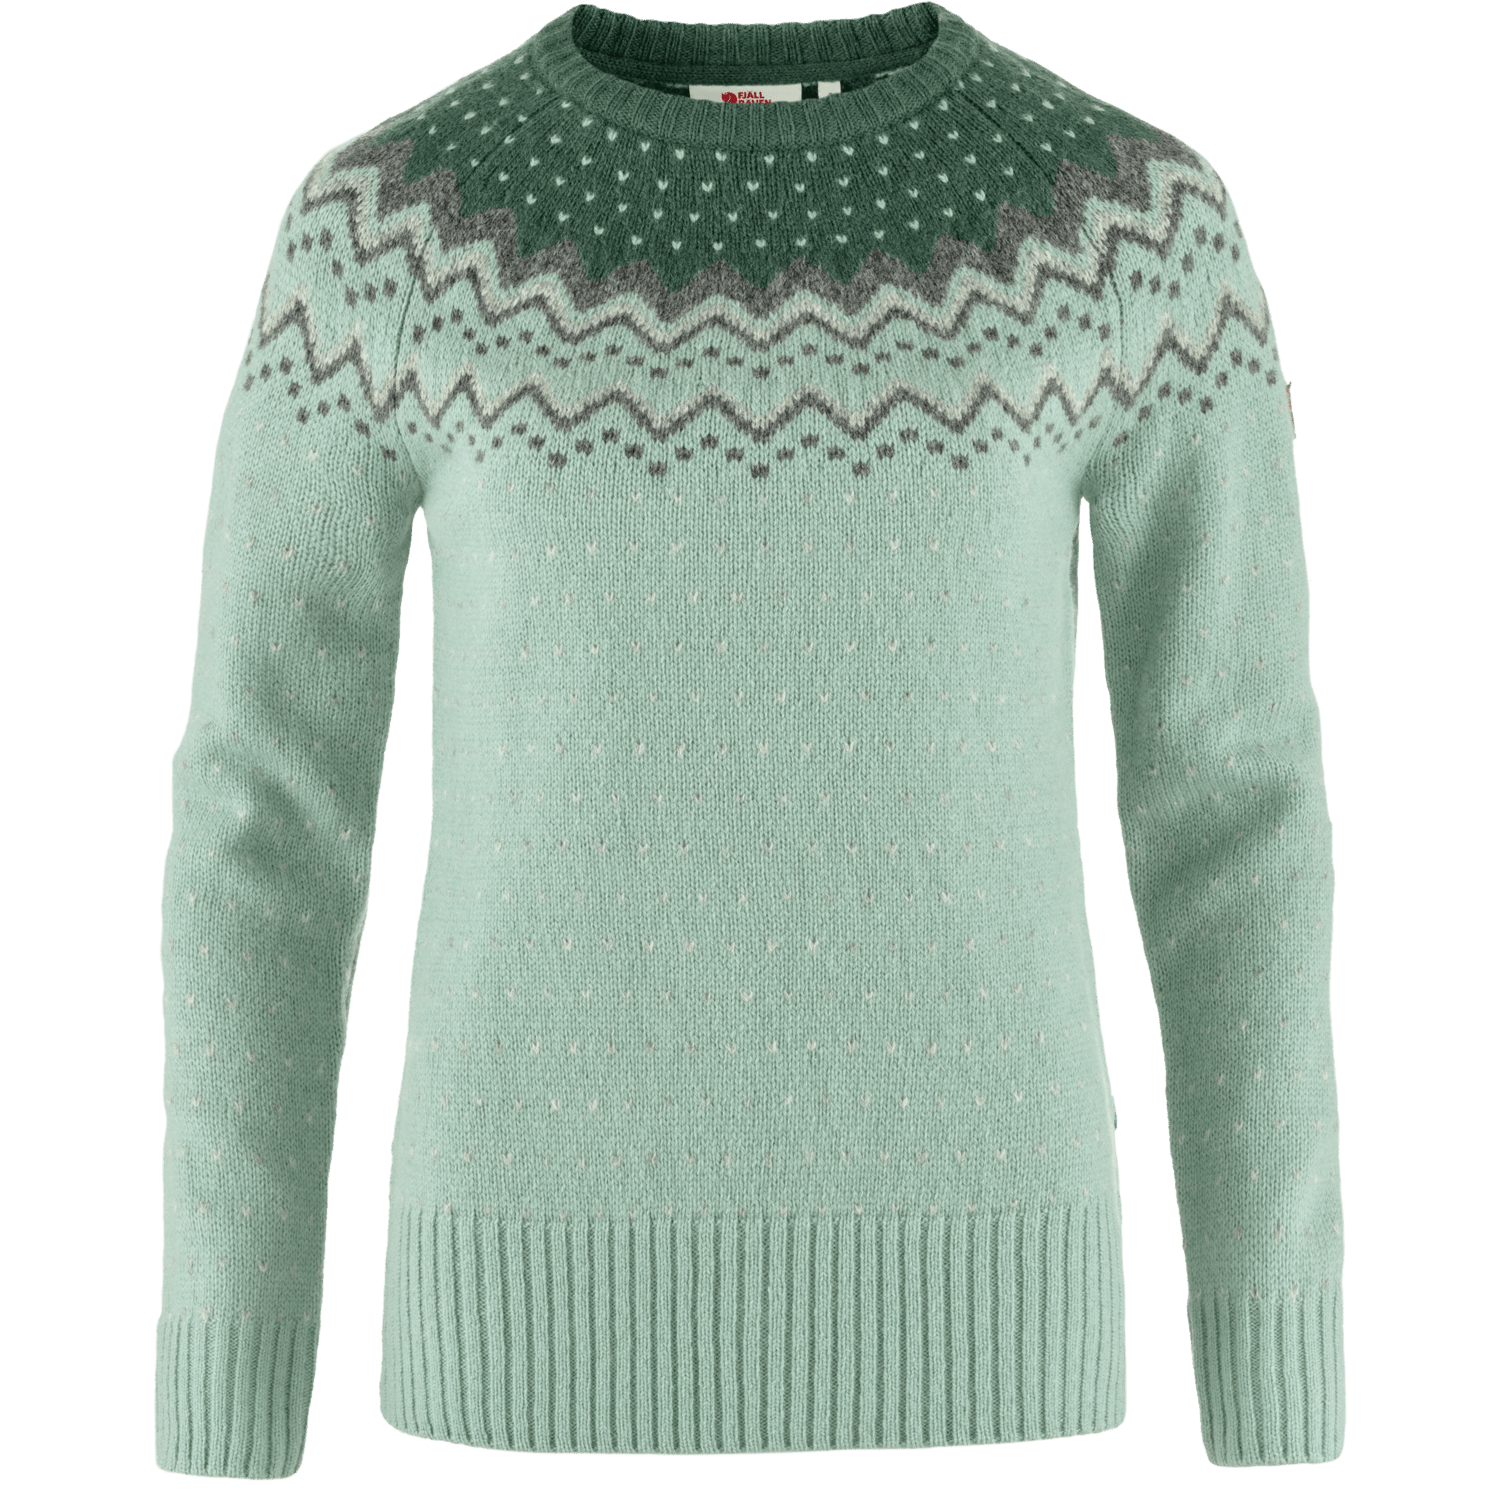 Fjällräven - Women's Övik Knit Sweater - 100% Wool - Weekendbee - sustainable sportswear